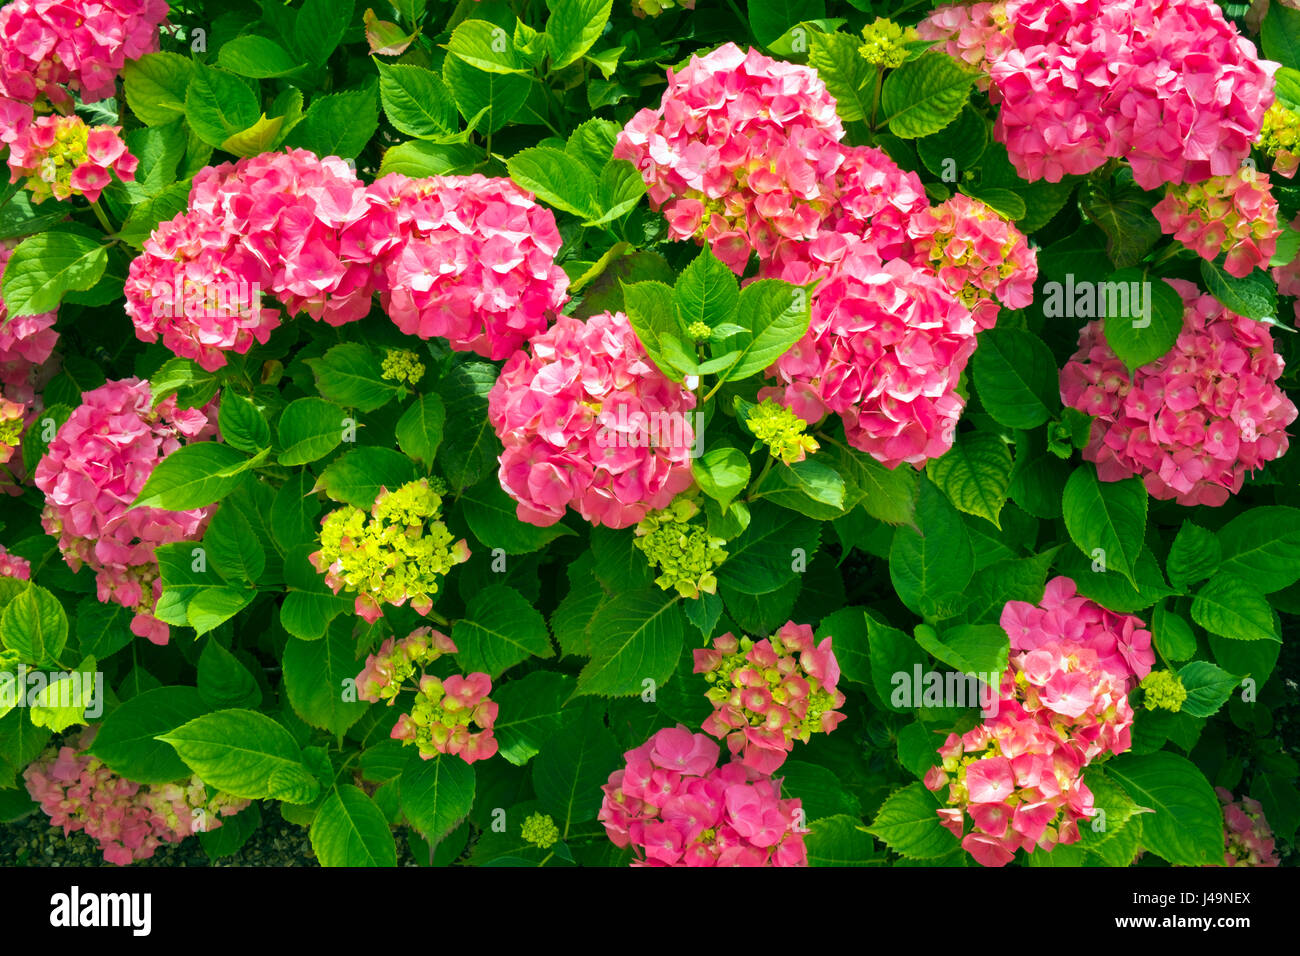 Abundant pink hydrangea bush flowers and foliage Stock Photo